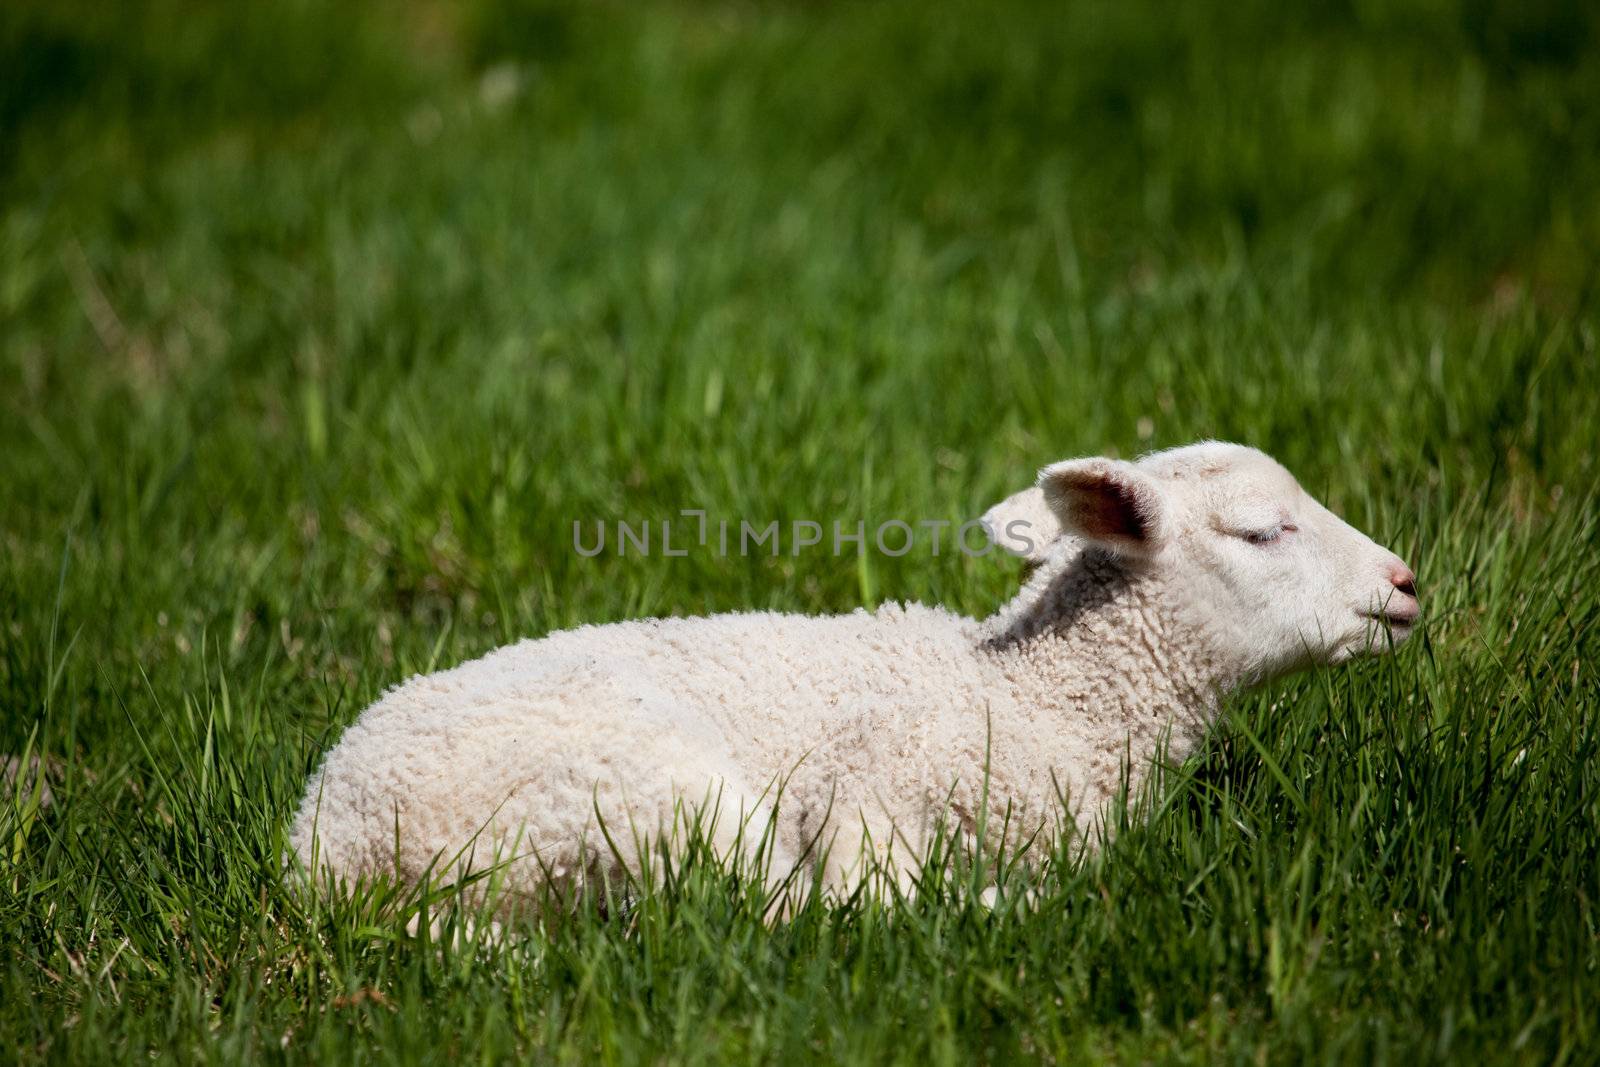 Sleep Lamb by leaf